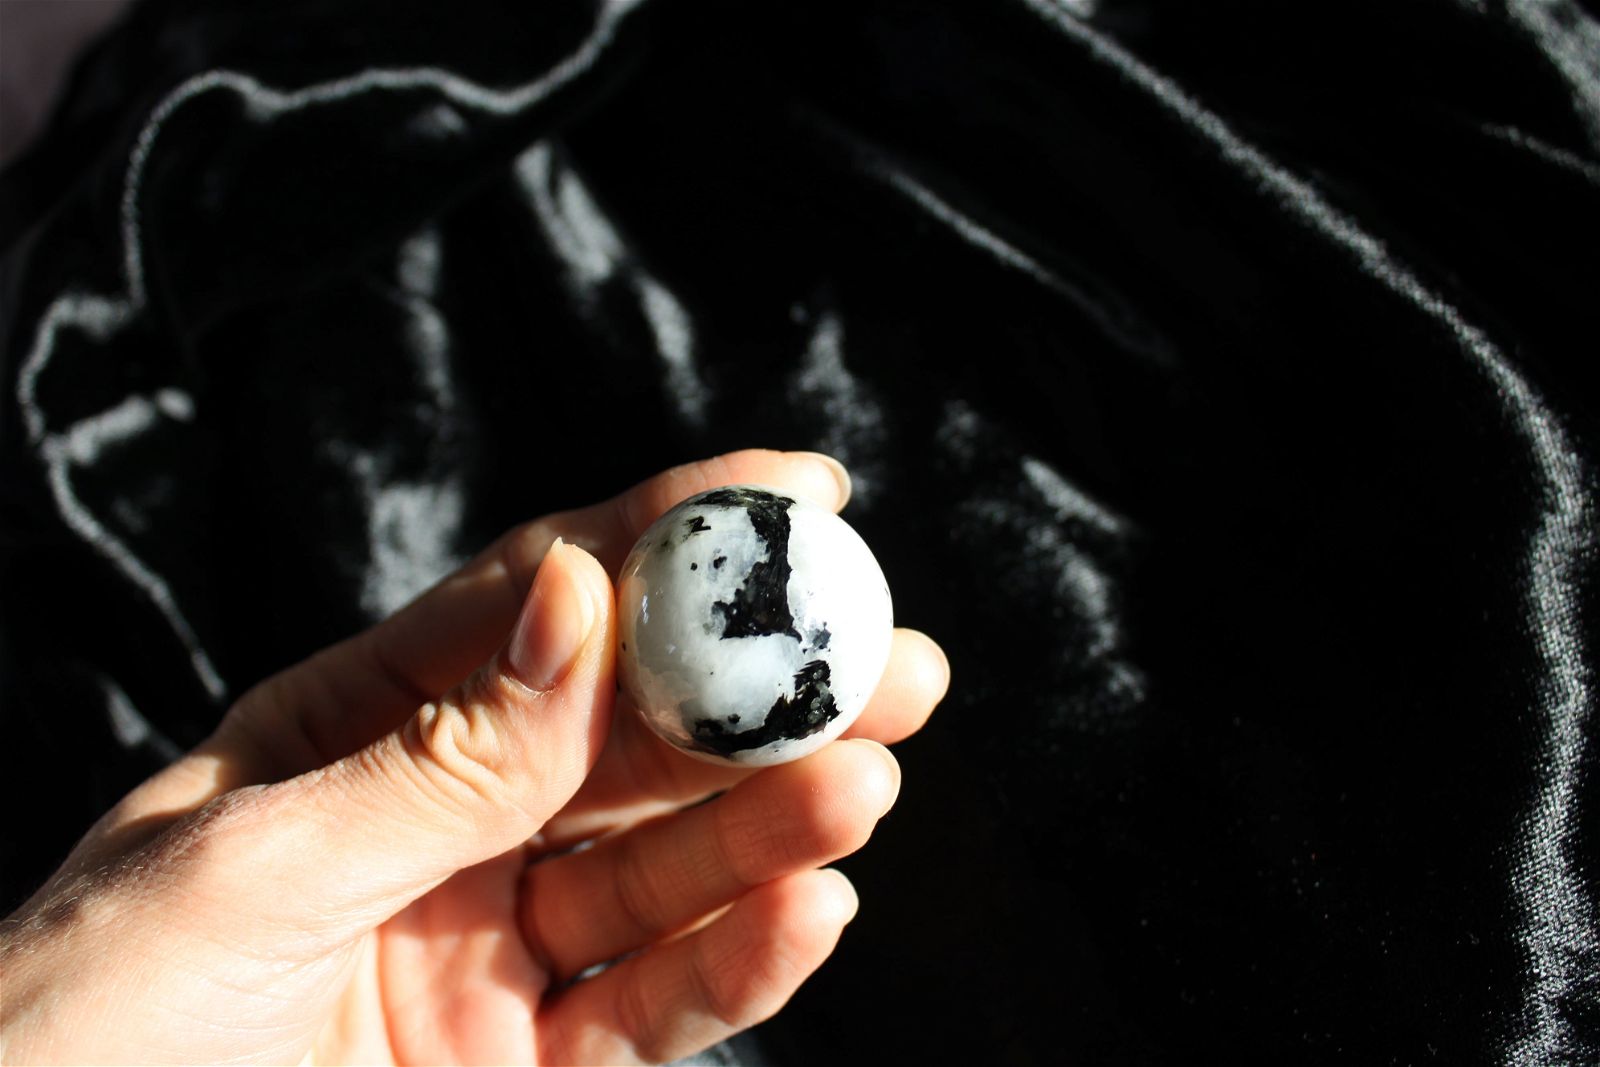 1 sphère labradorite blanche / pierre de lune arc en ciel 3.45 cm - Aurore Lune 